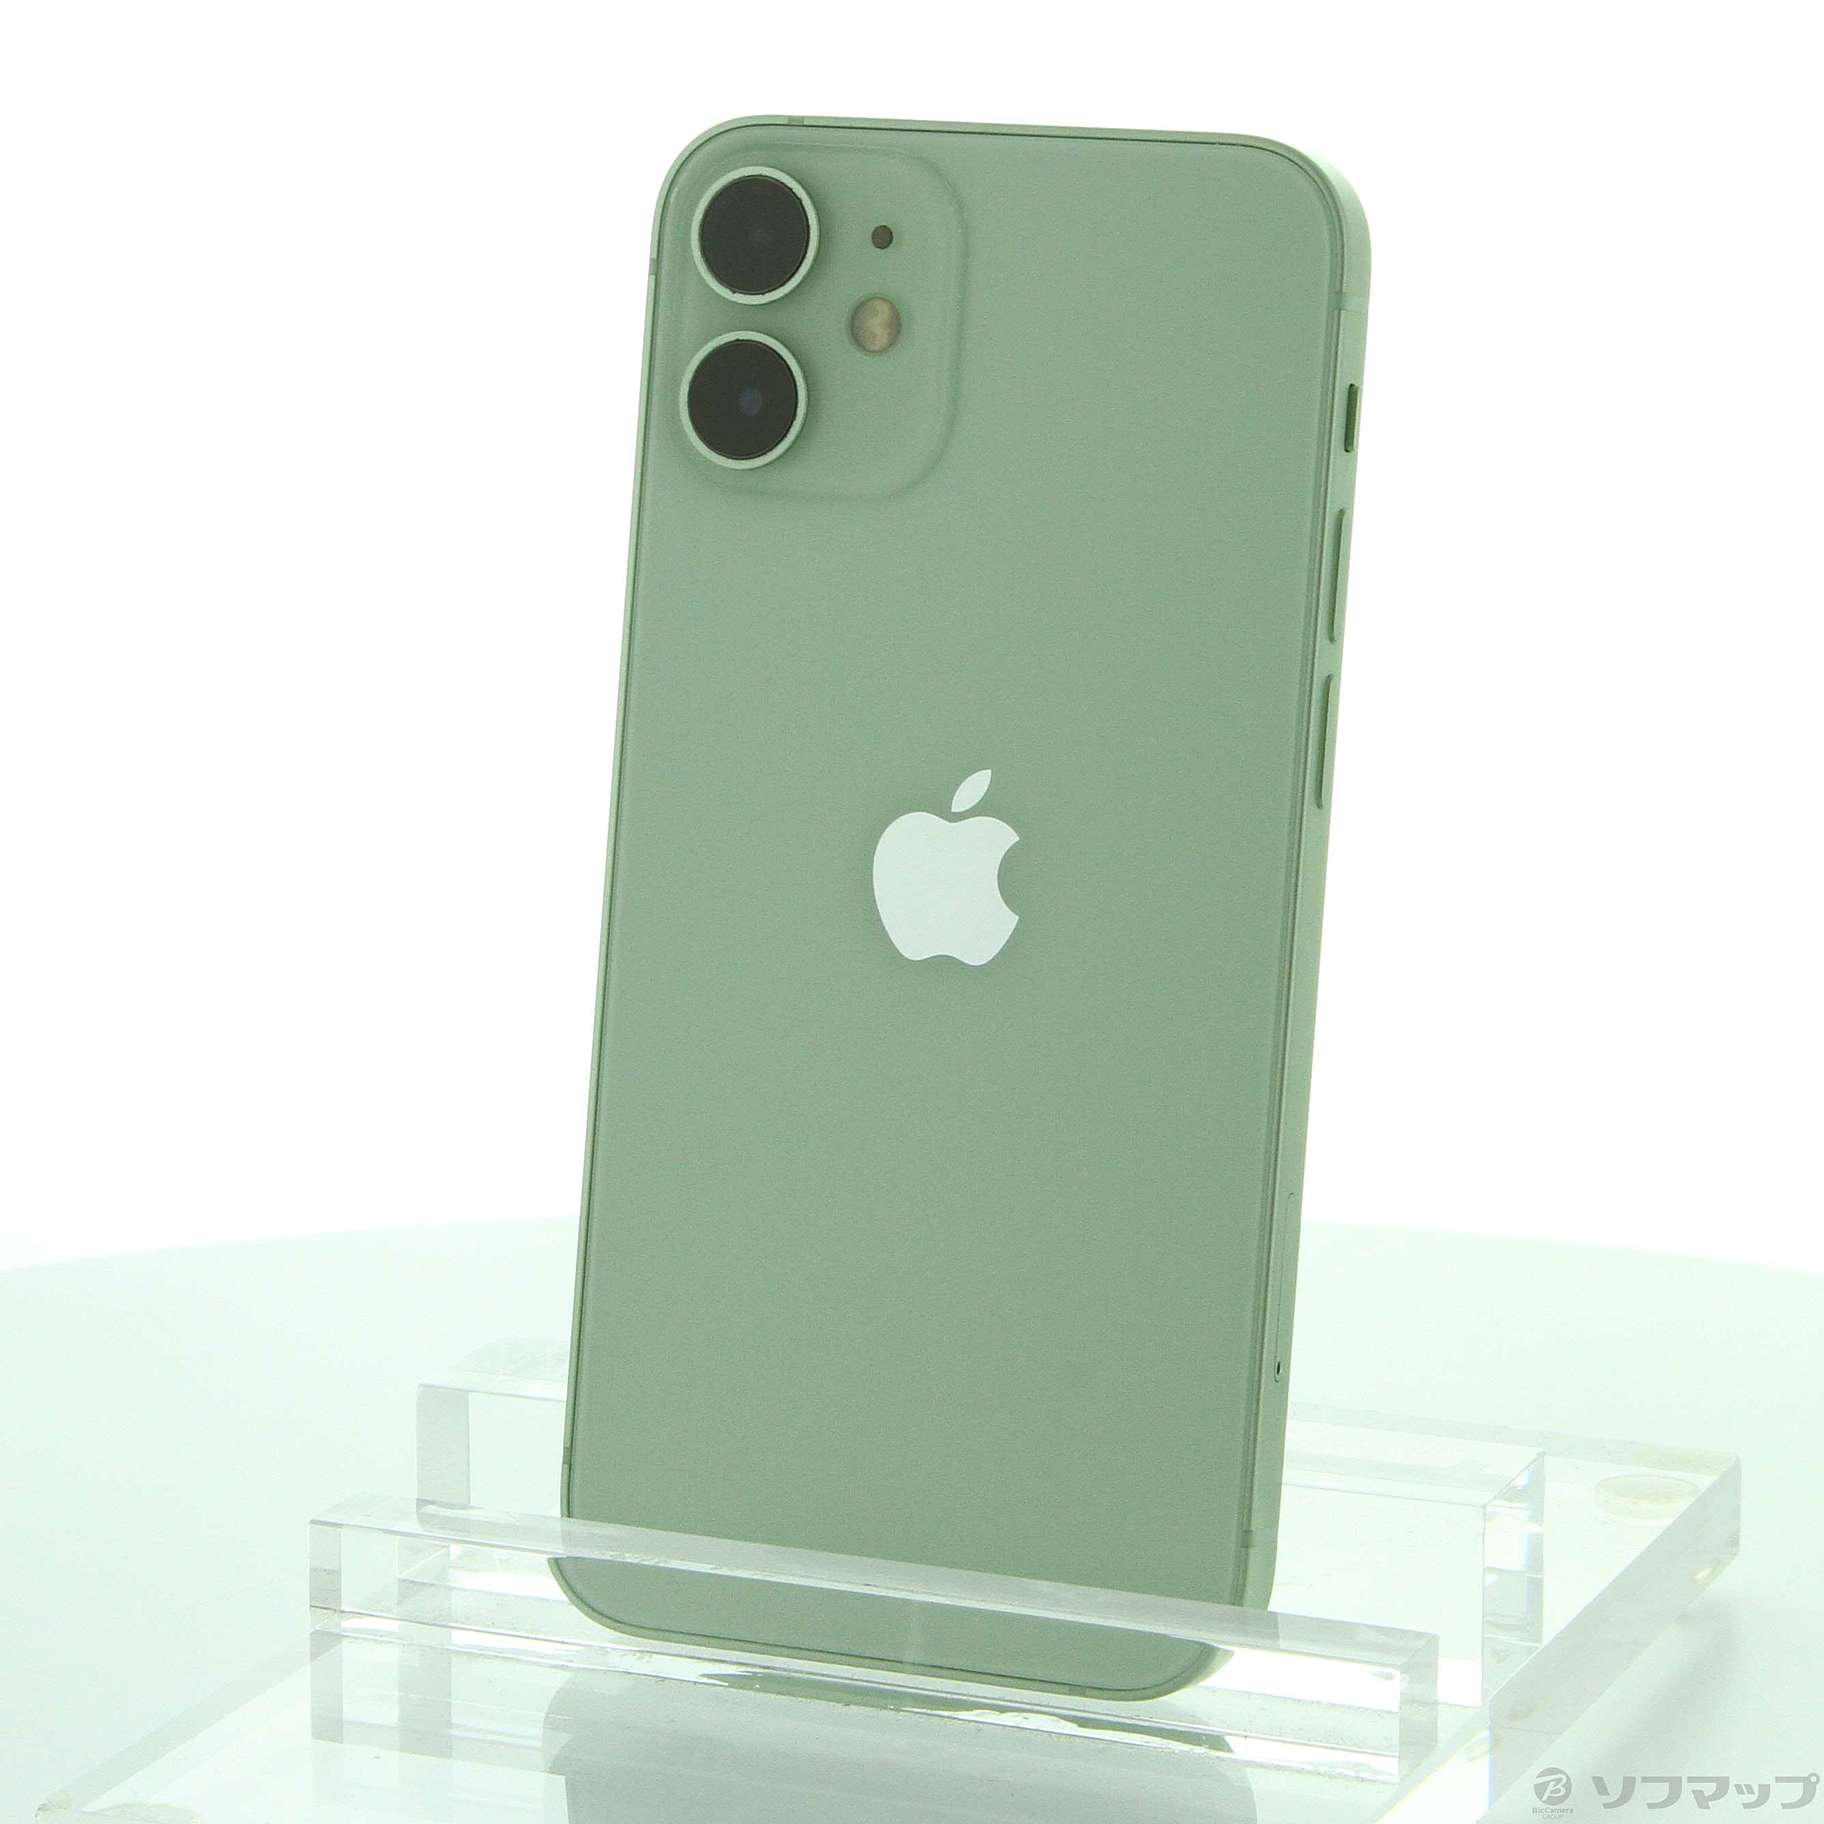 新品未開封 iPhone 12 mini 64GB グリーン simフリー